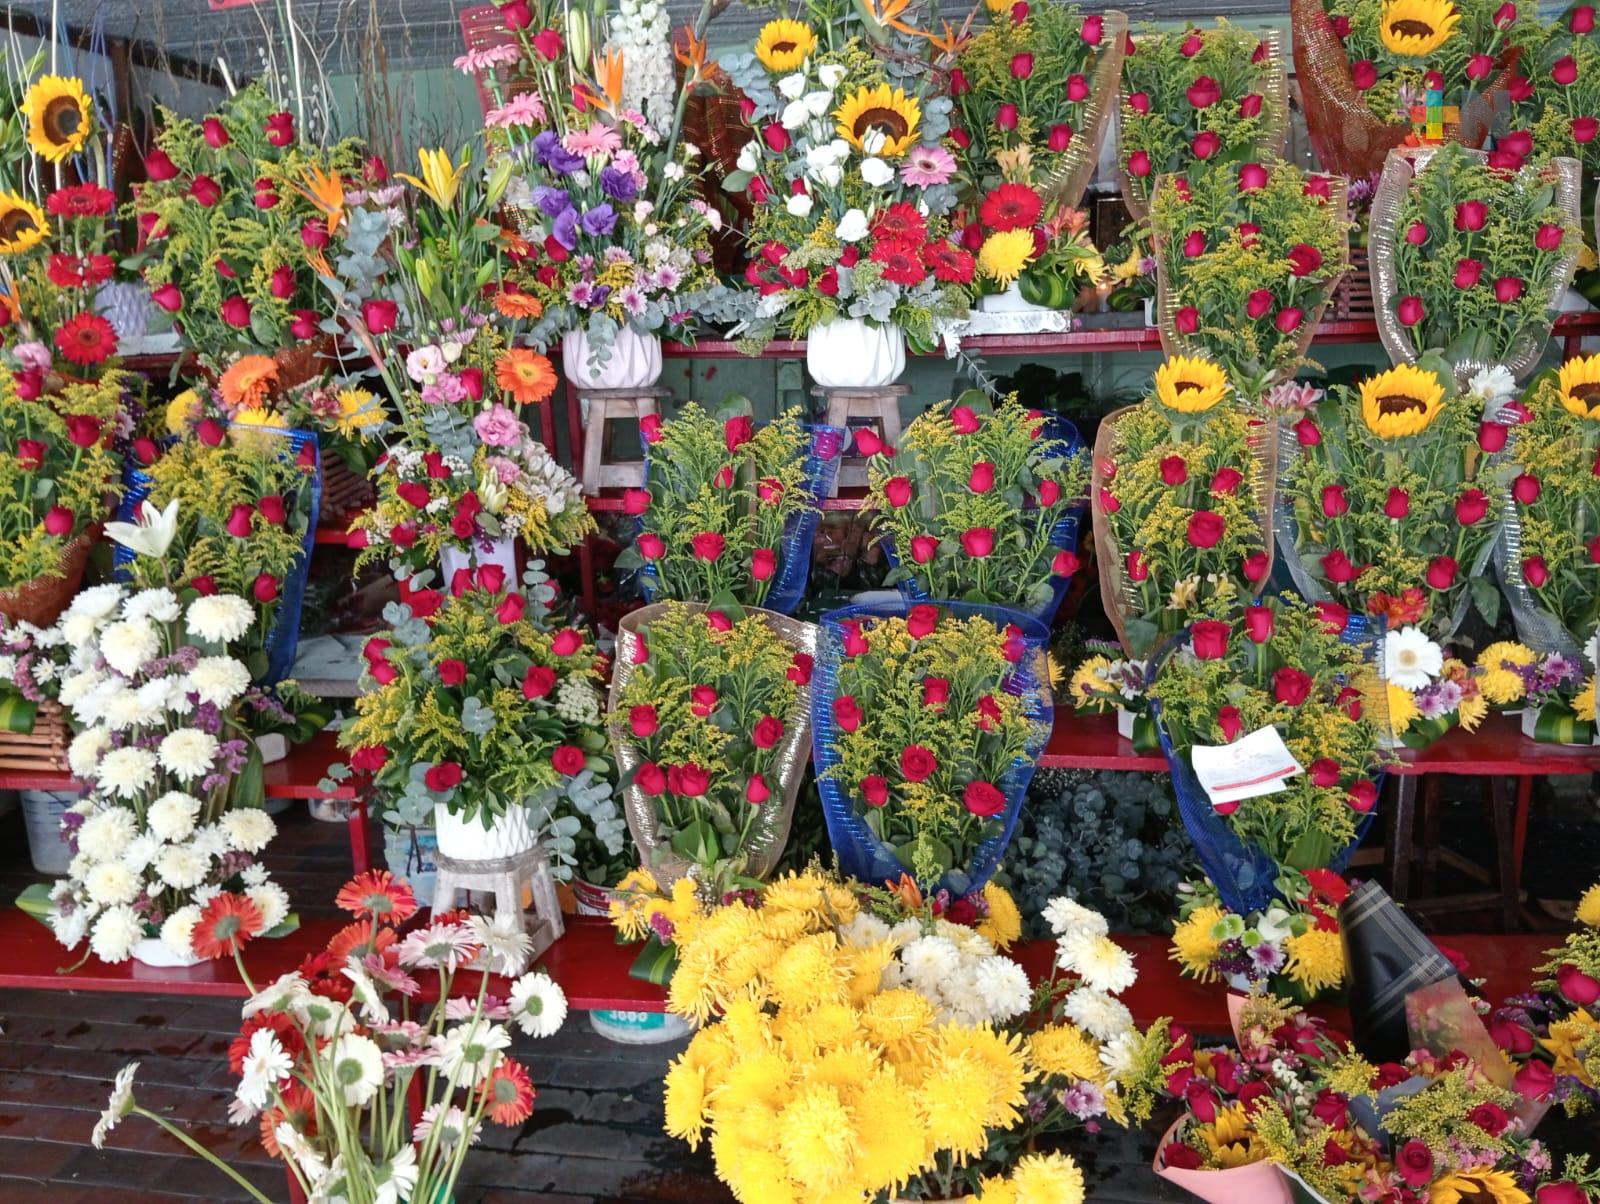 Por Día de la Madre, comerciantes de flores esperan alcanzar el 100% de ventas